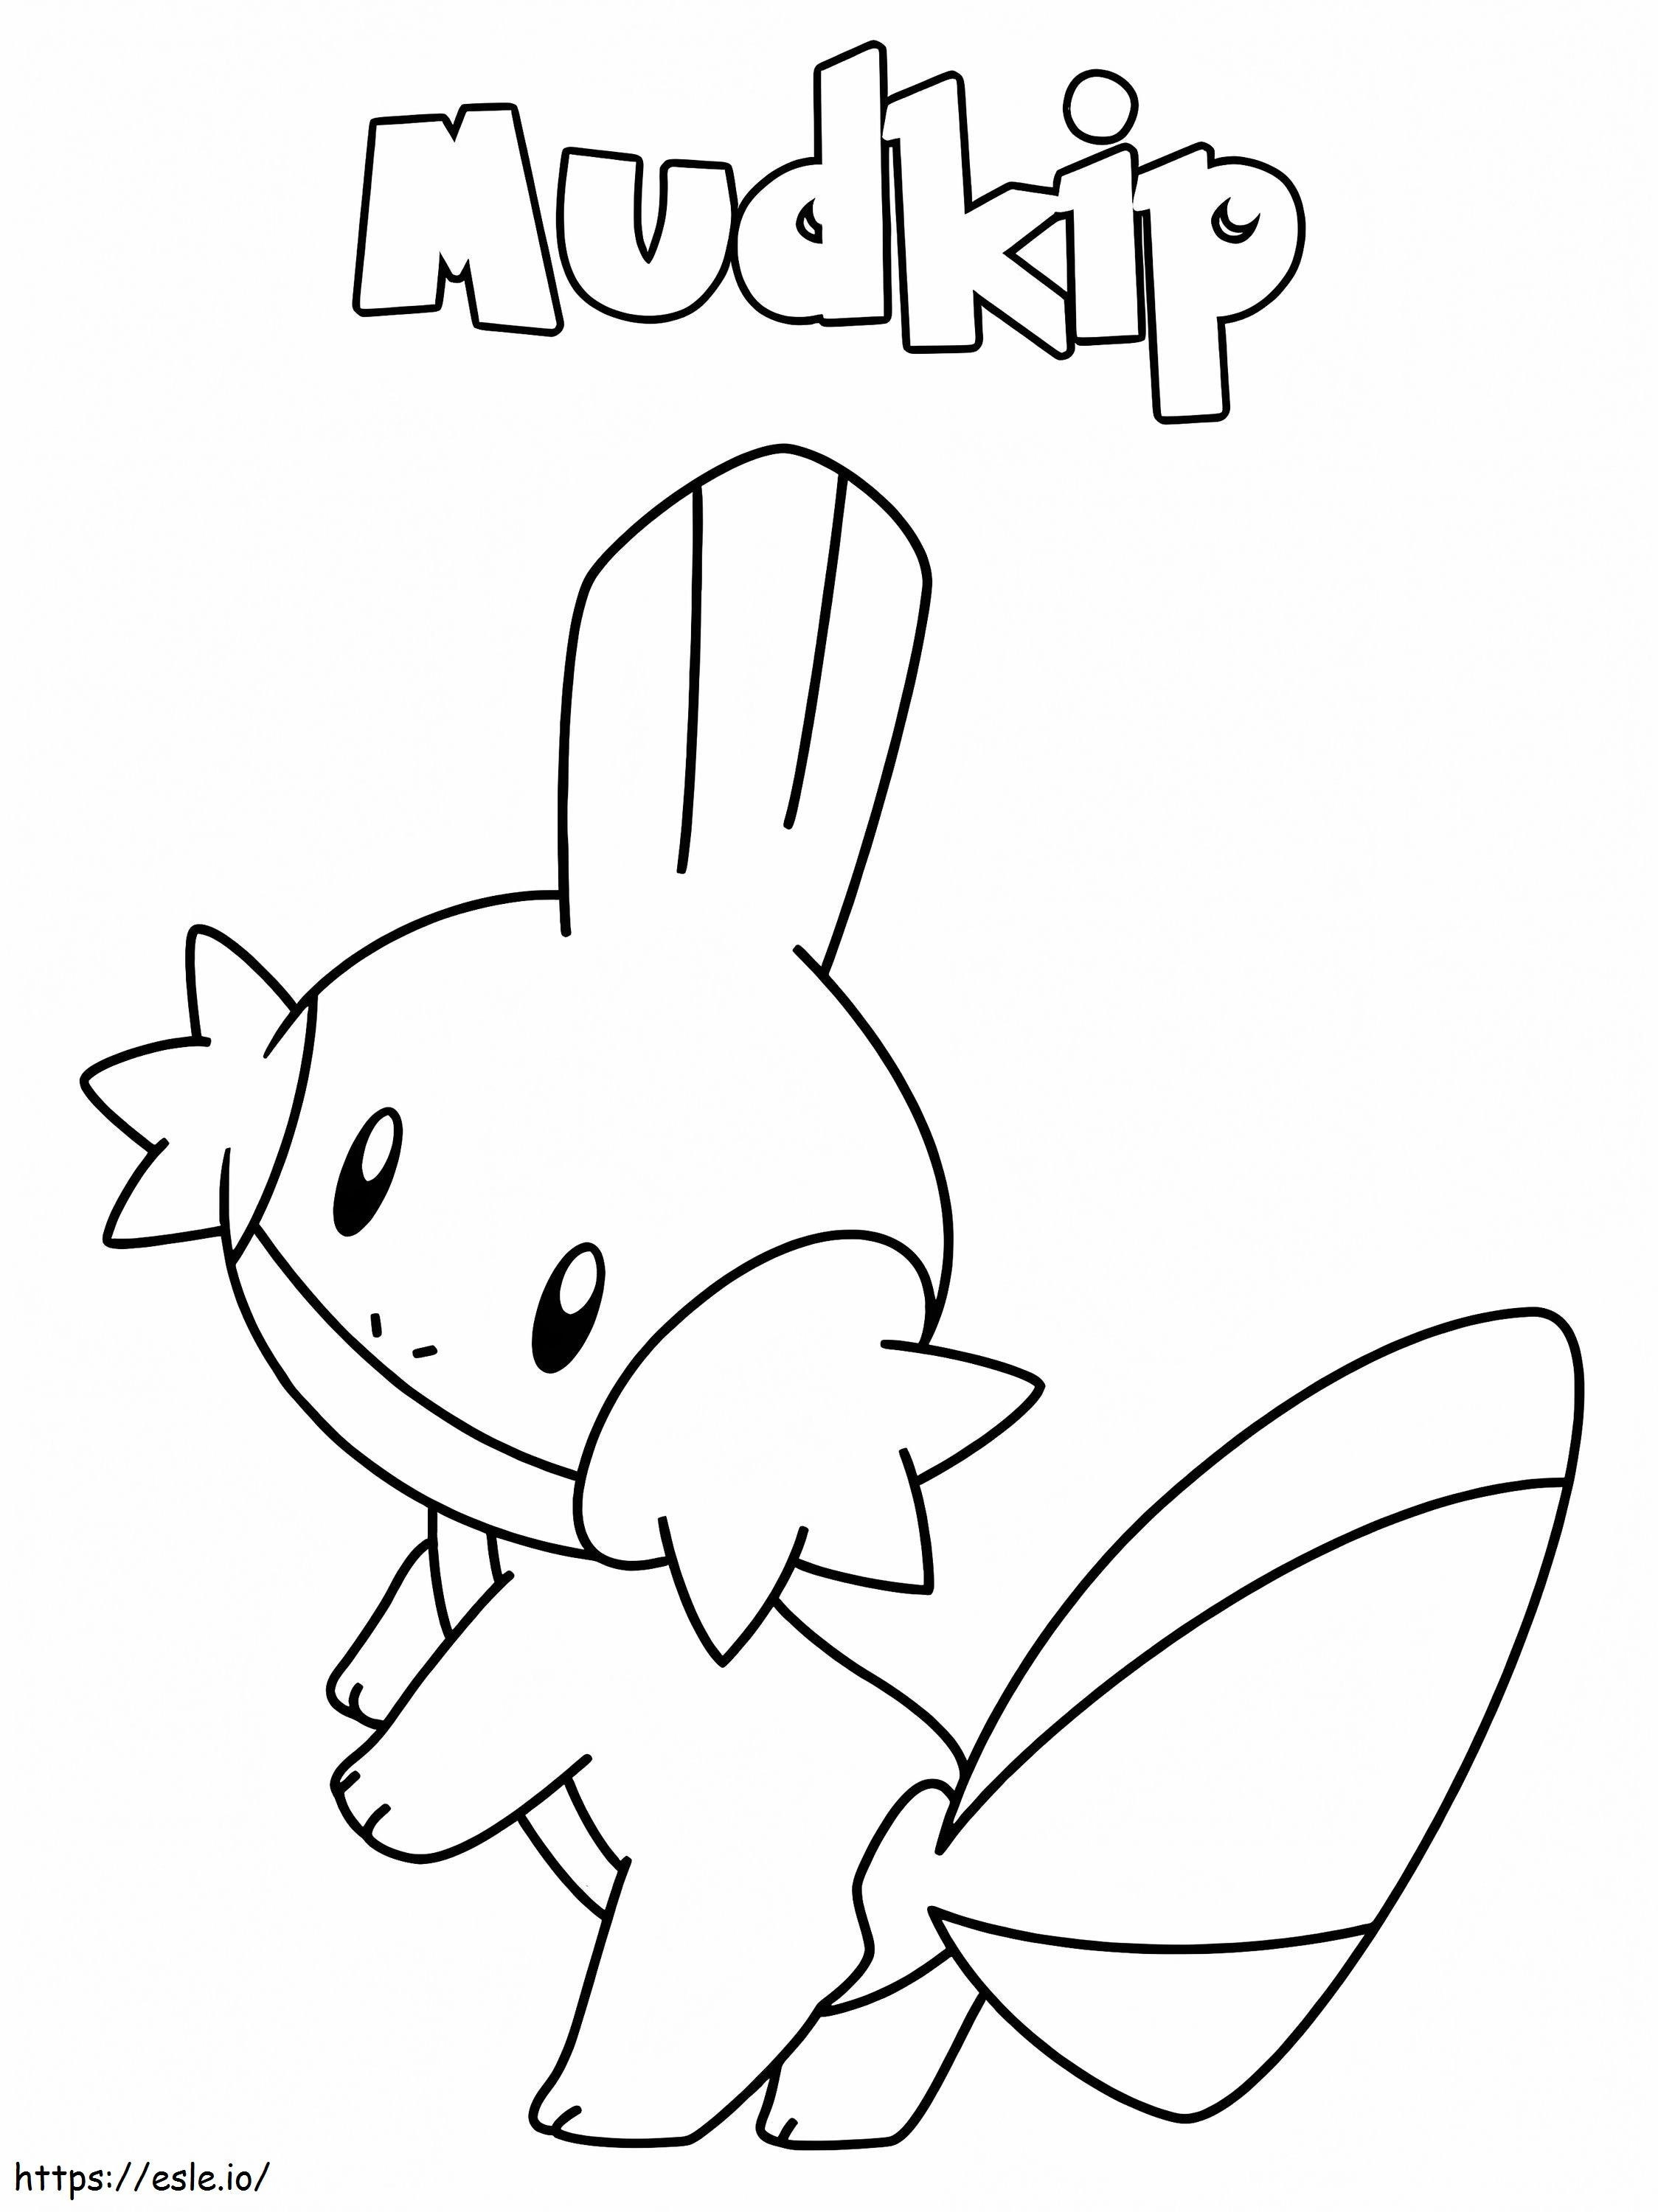 Coloriage Imprimer Mudkip Pokemon à imprimer dessin